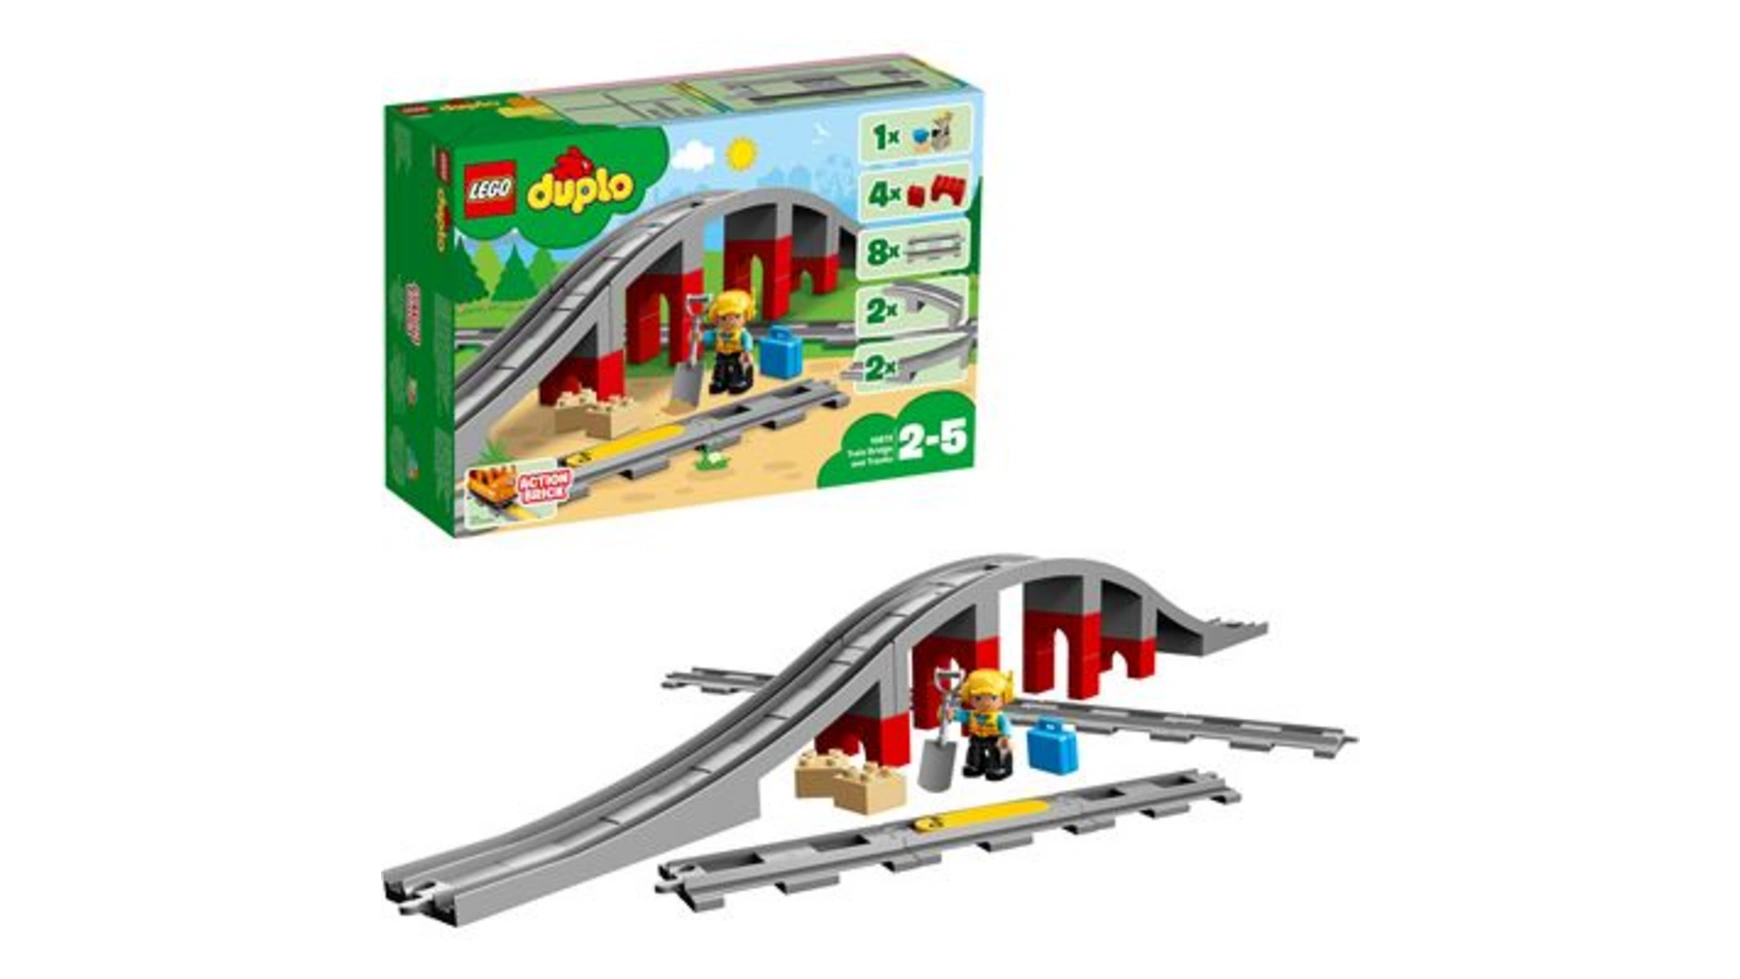 Lego DUPLO Набор Железнодорожный мост и рельсы, детская игрушка world набор строительных блоков надземный железнодорожный мост märklin